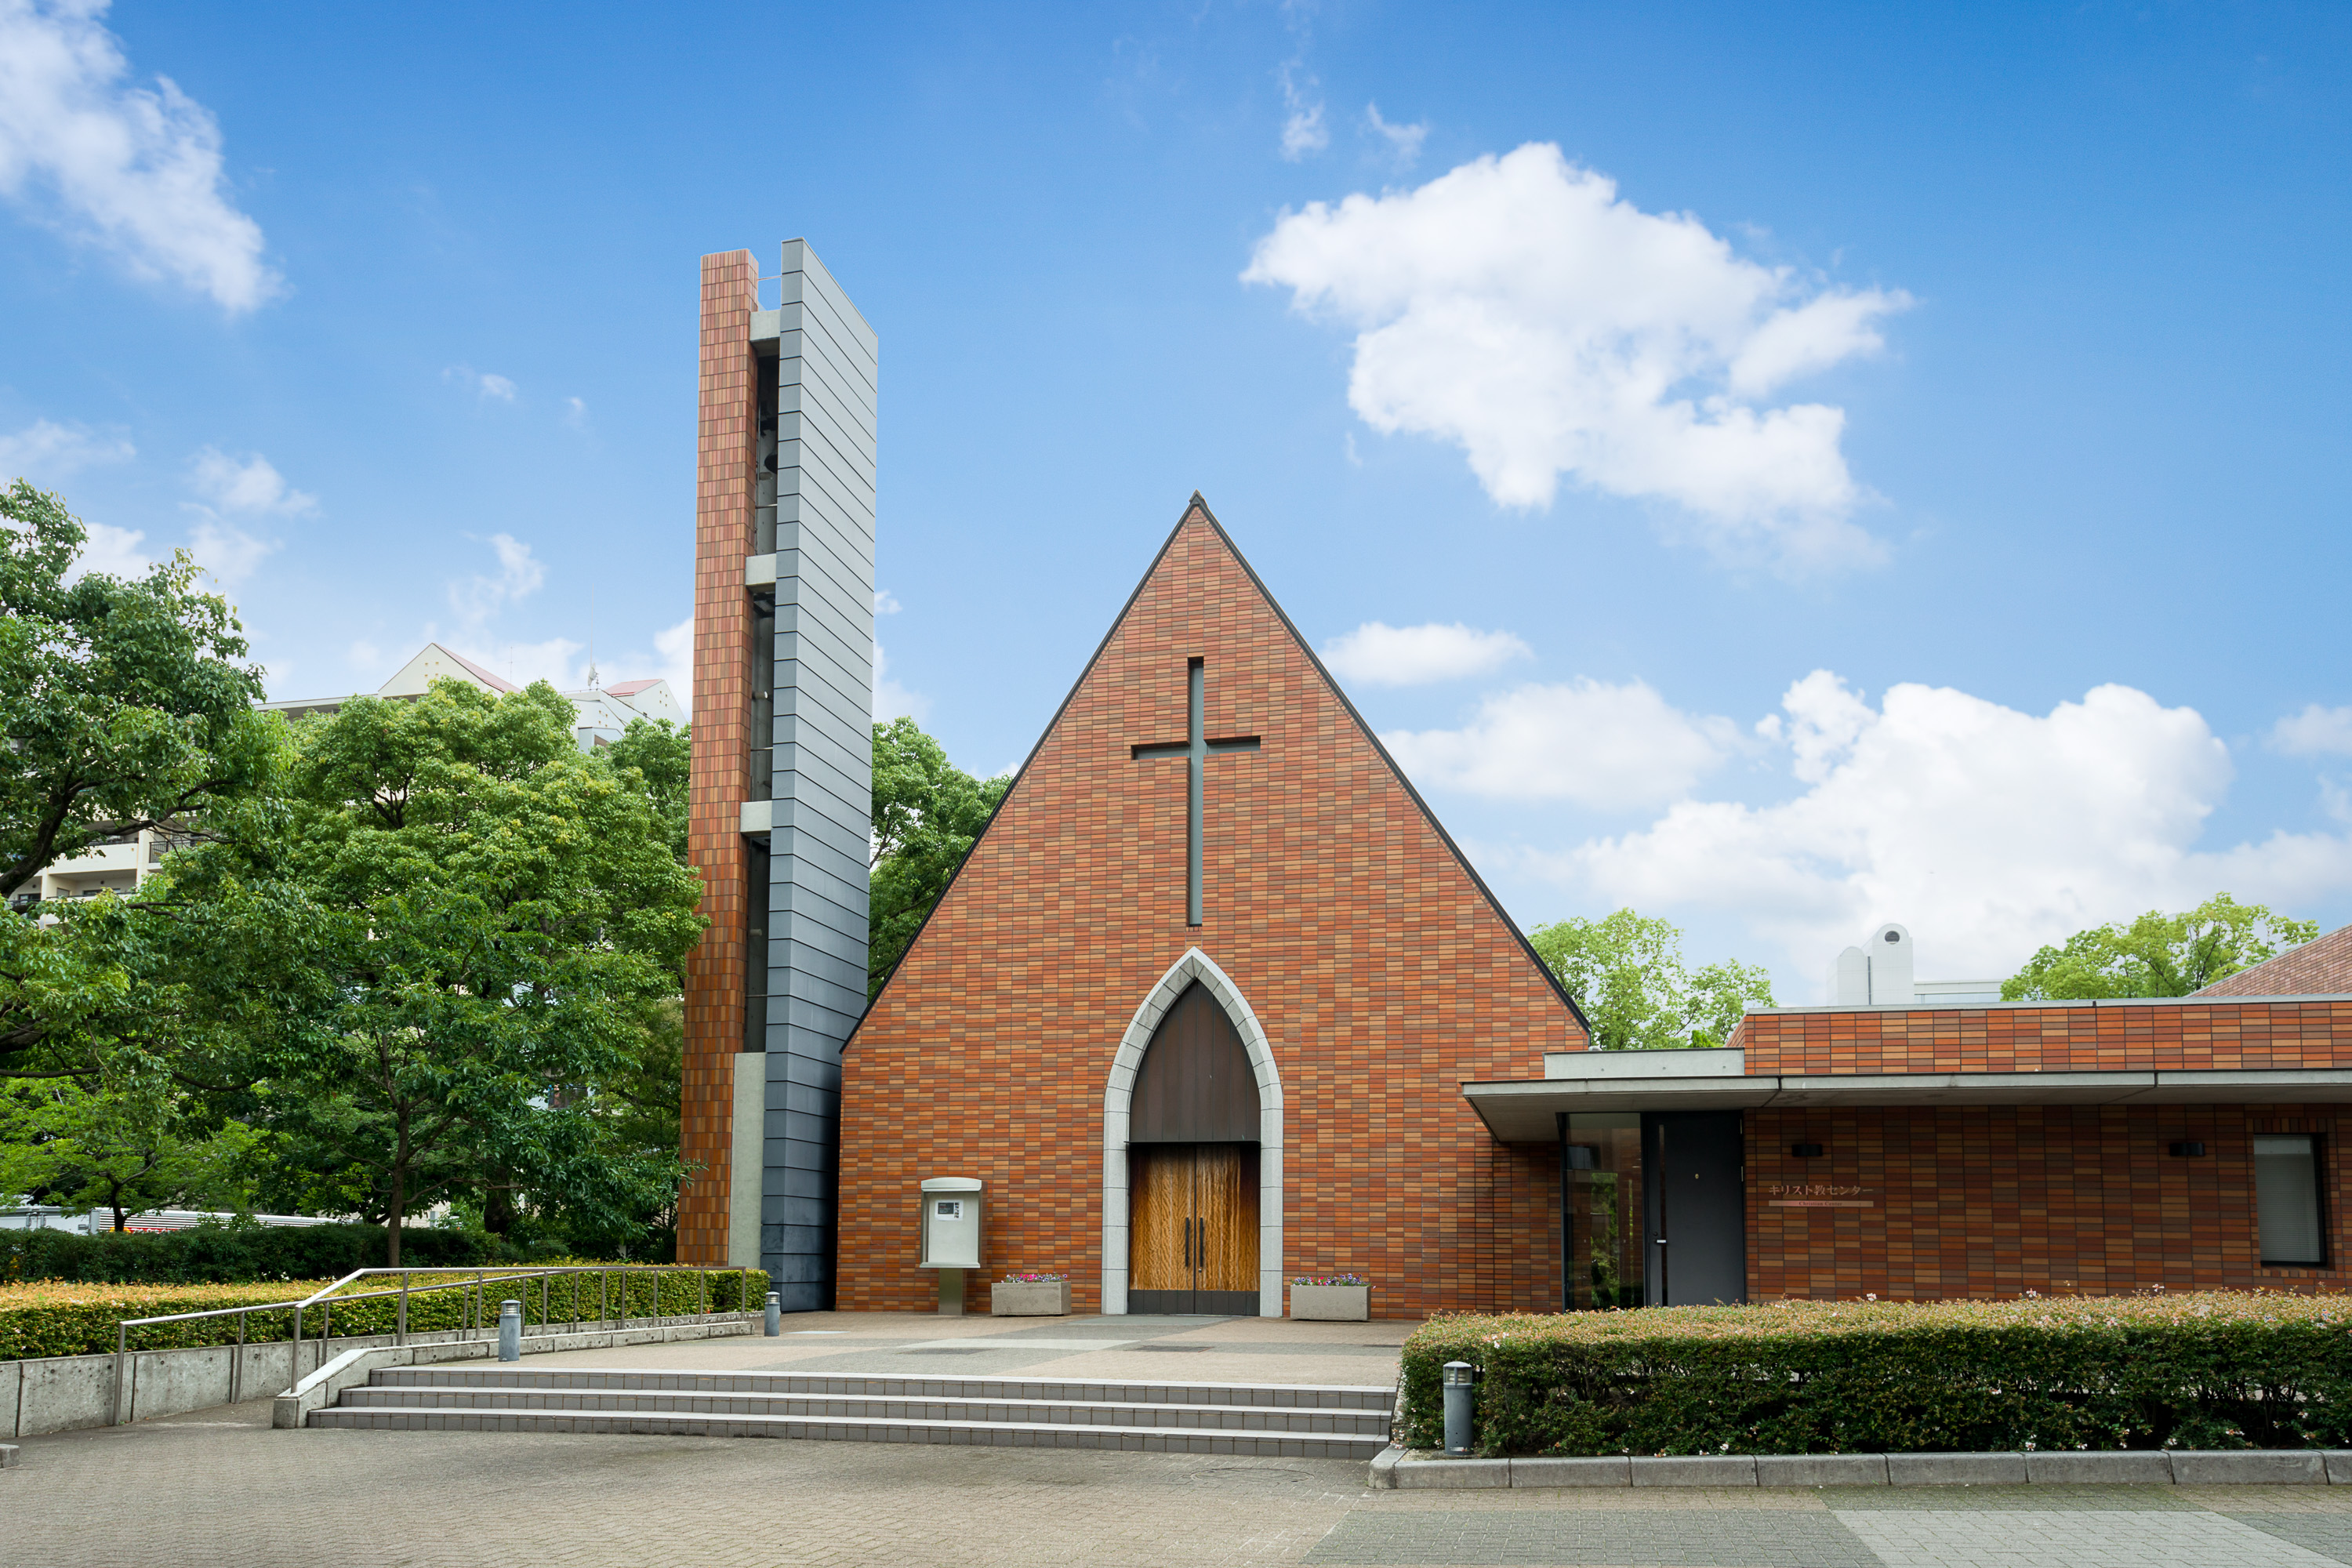 ［チャペル］名古屋キャンパスの大学のシンボルであるチャペル。荘厳な礼拝堂は、心に安らぎを与えてくれます。